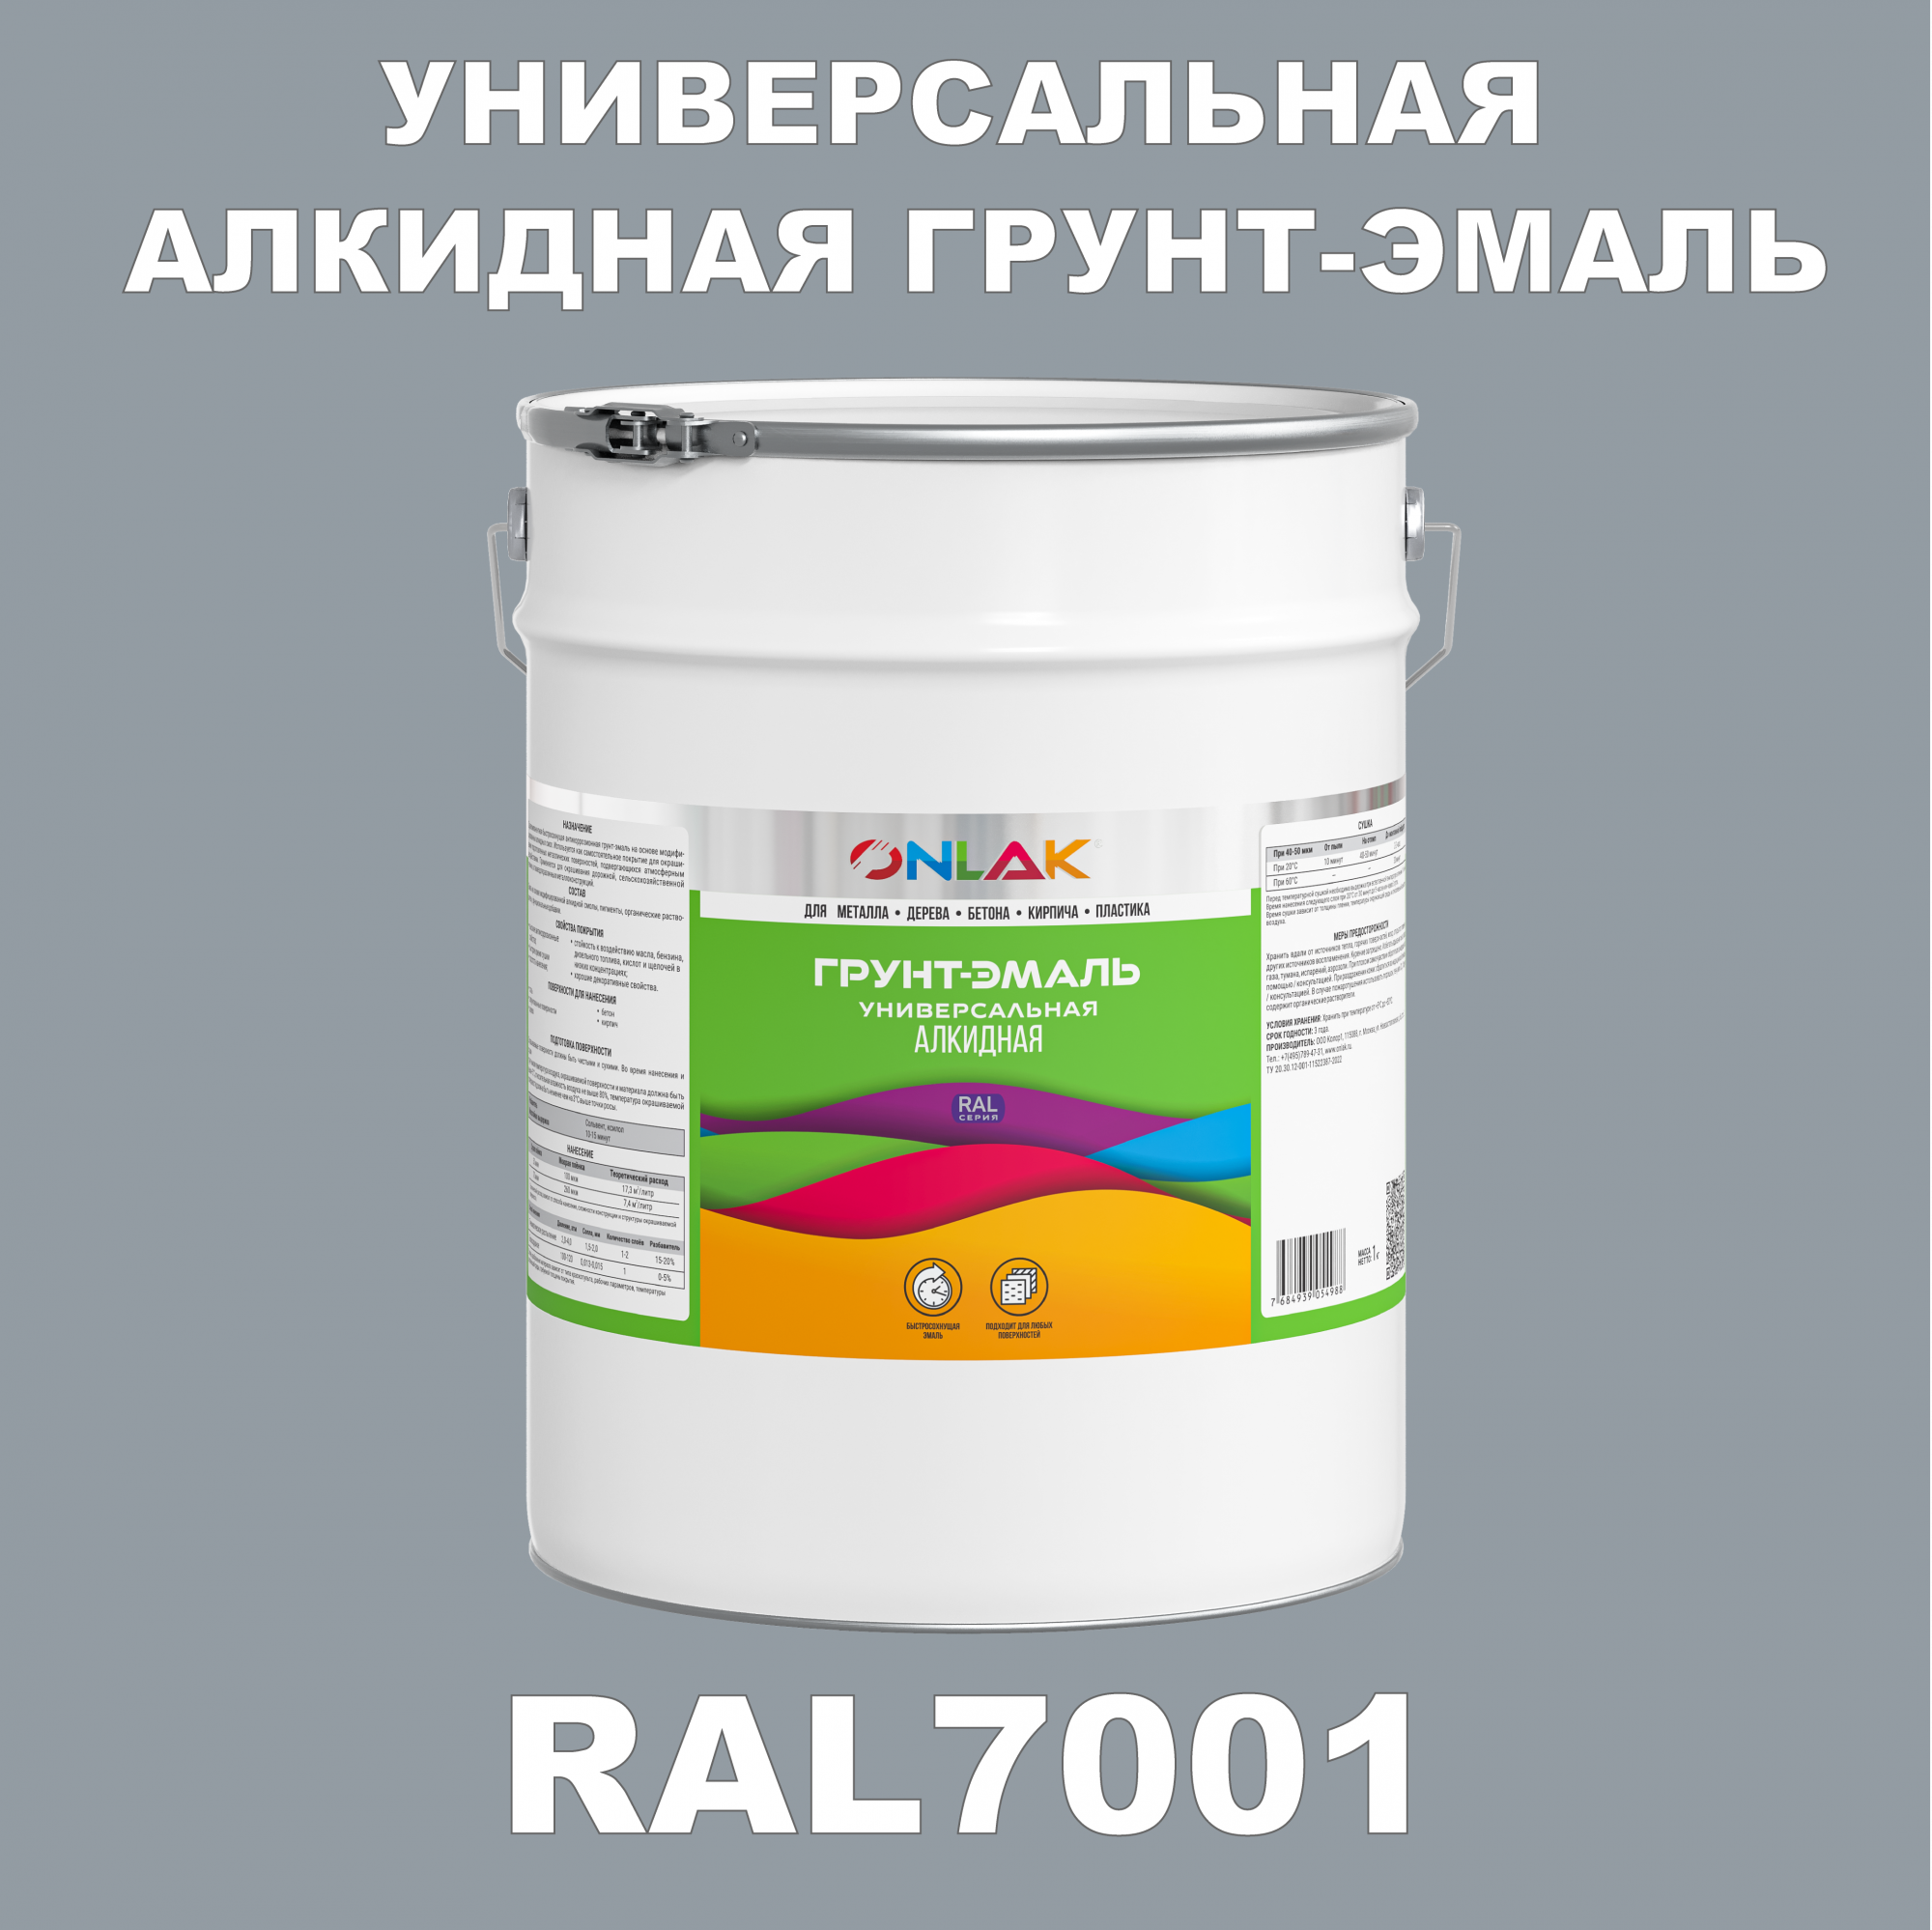 Грунт-эмаль ONLAK 1К RAL7001 антикоррозионная алкидная по металлу по ржавчине 20 кг грунт эмаль neomid по ржавчине быстросохнущая алкидная серая 0 9 кг